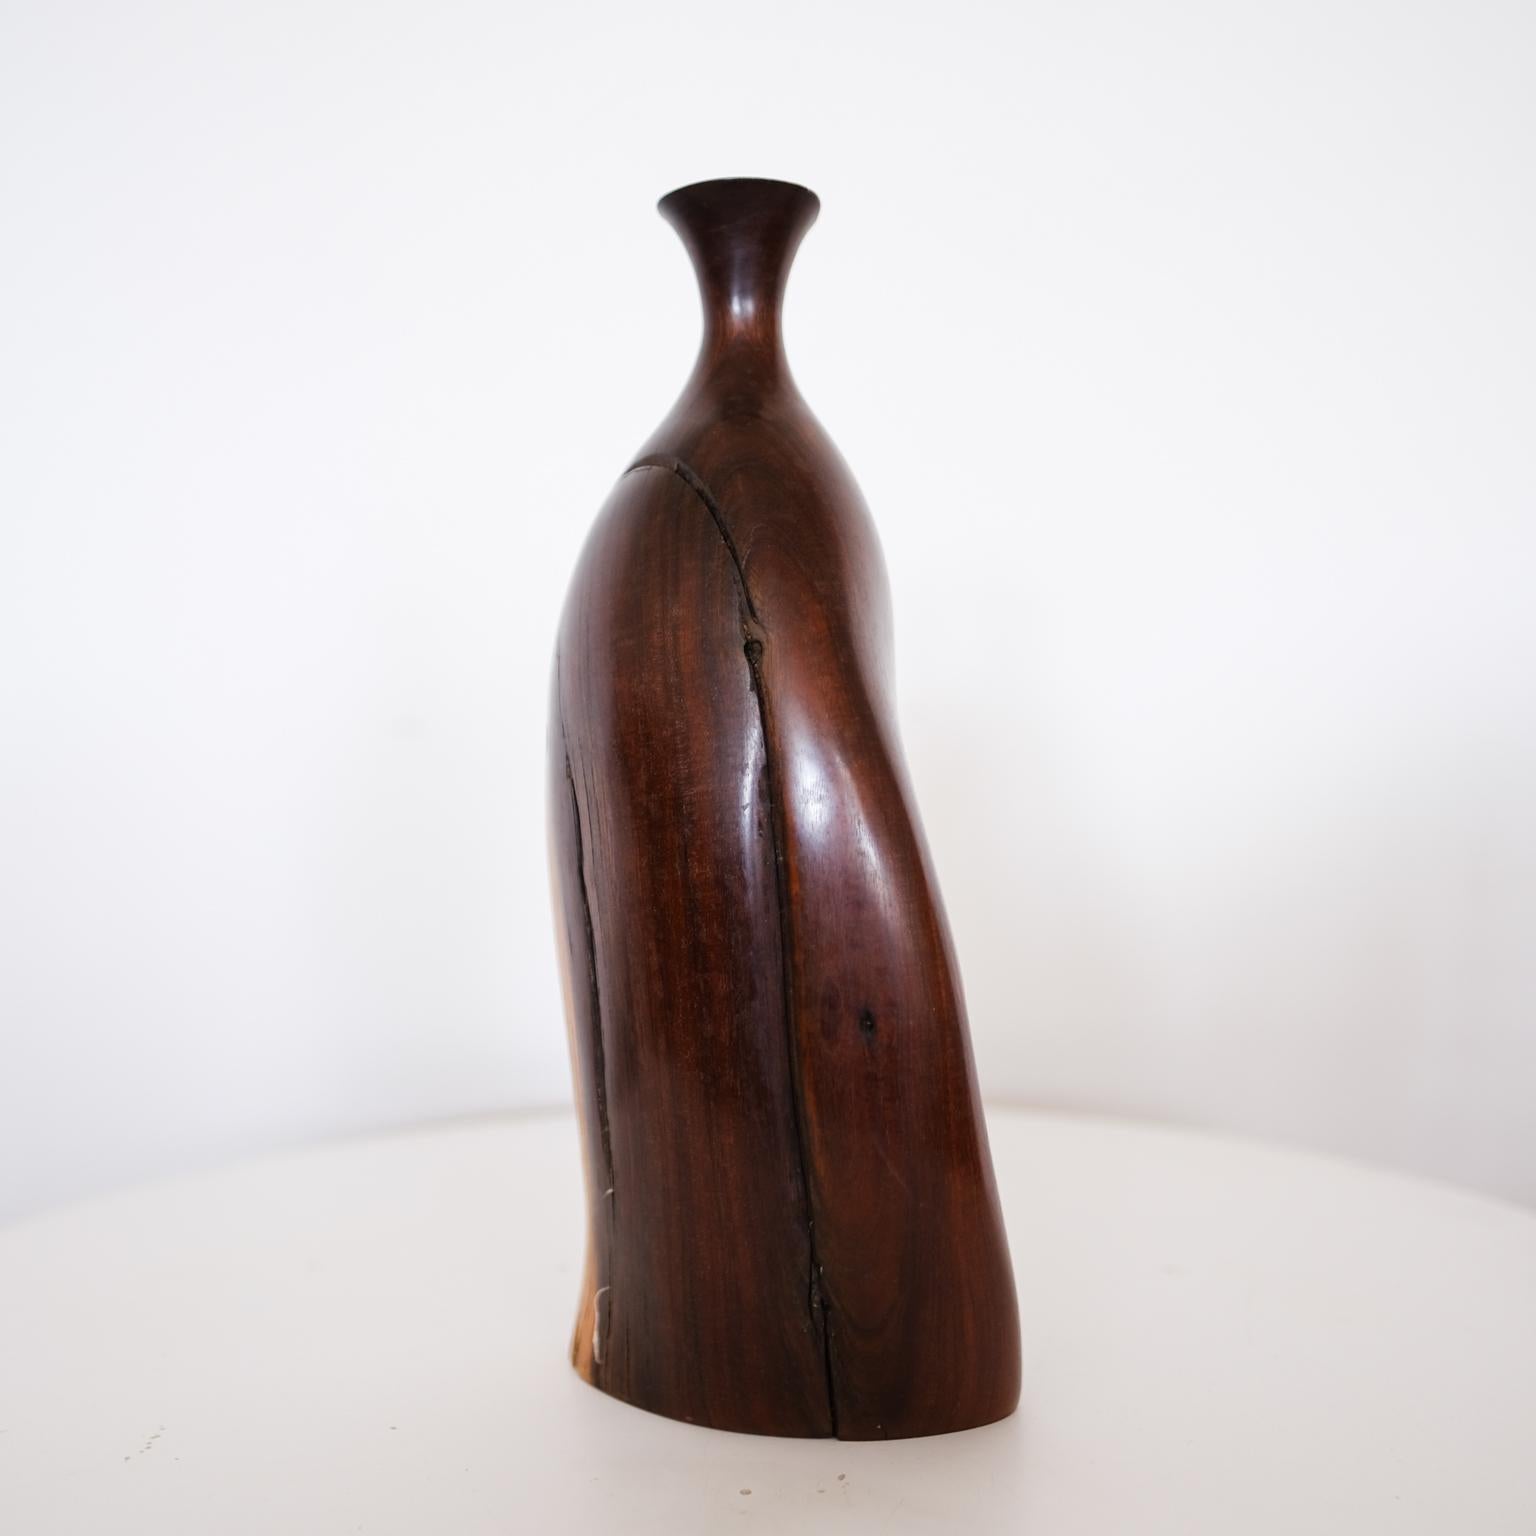 Turned Bob Womack Sculptural Wood Vase For Sale